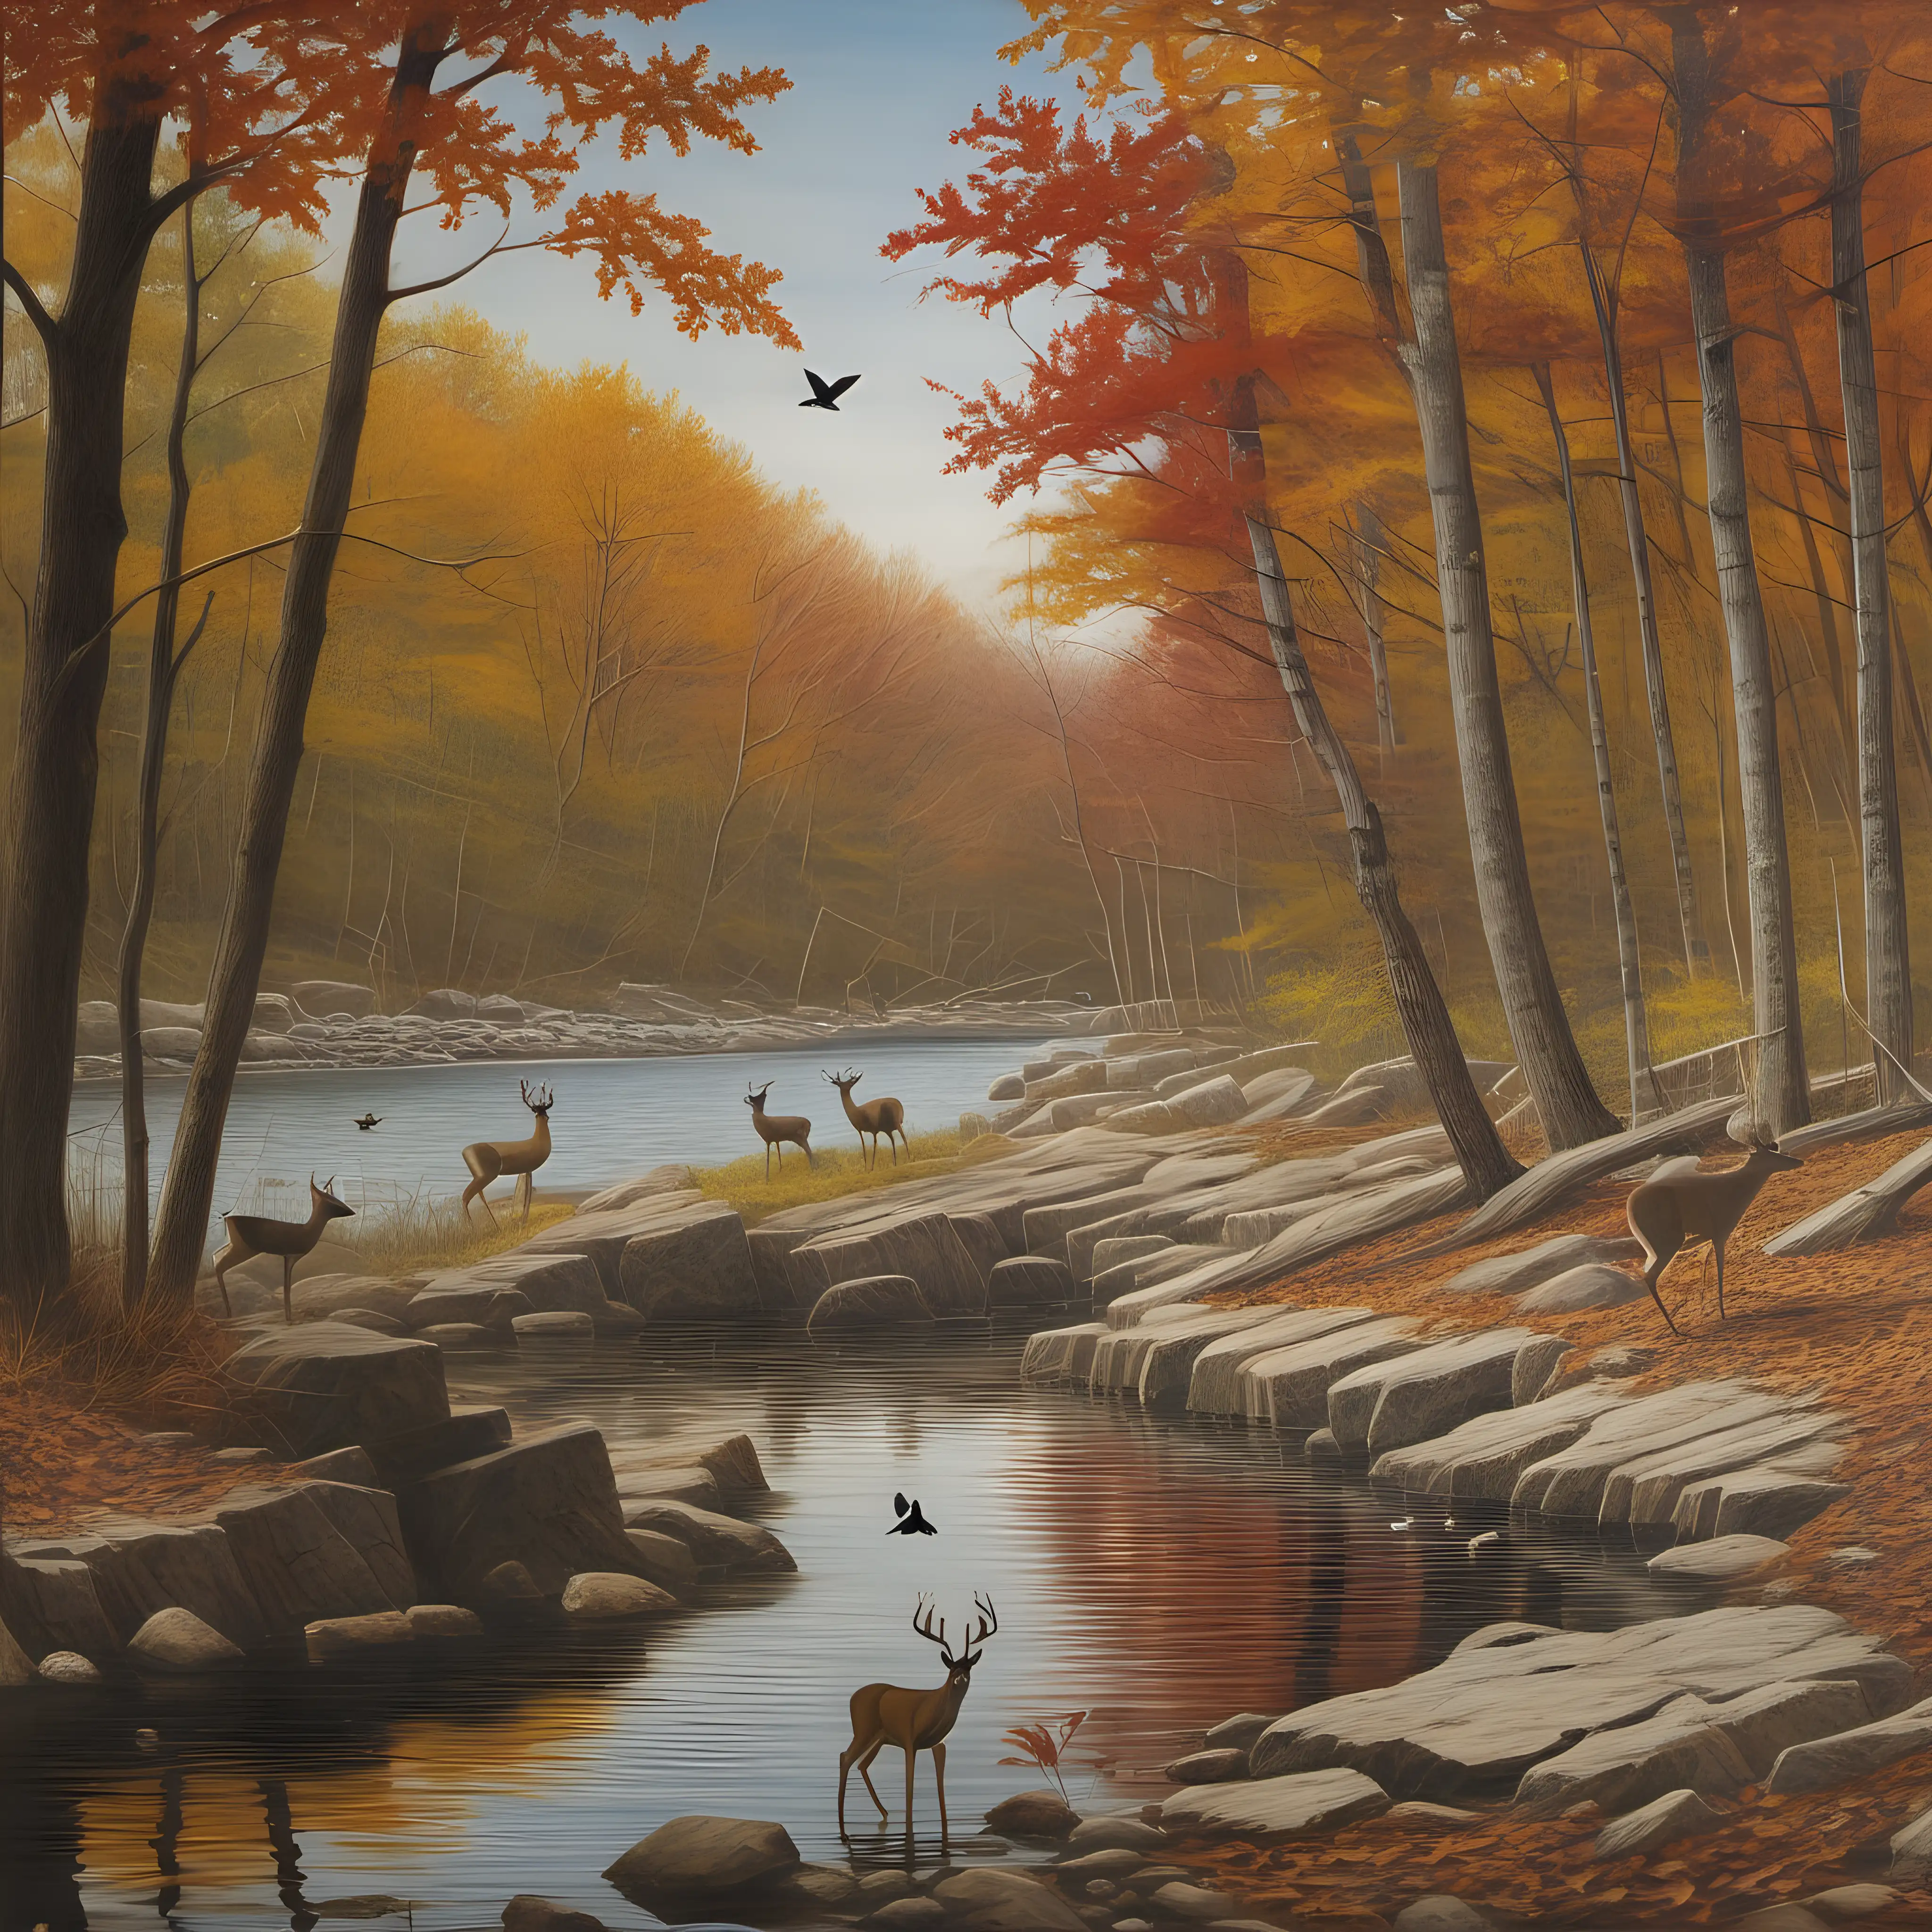 rocky creek shoreline in the woods; songbirds; deer drinking; autumn